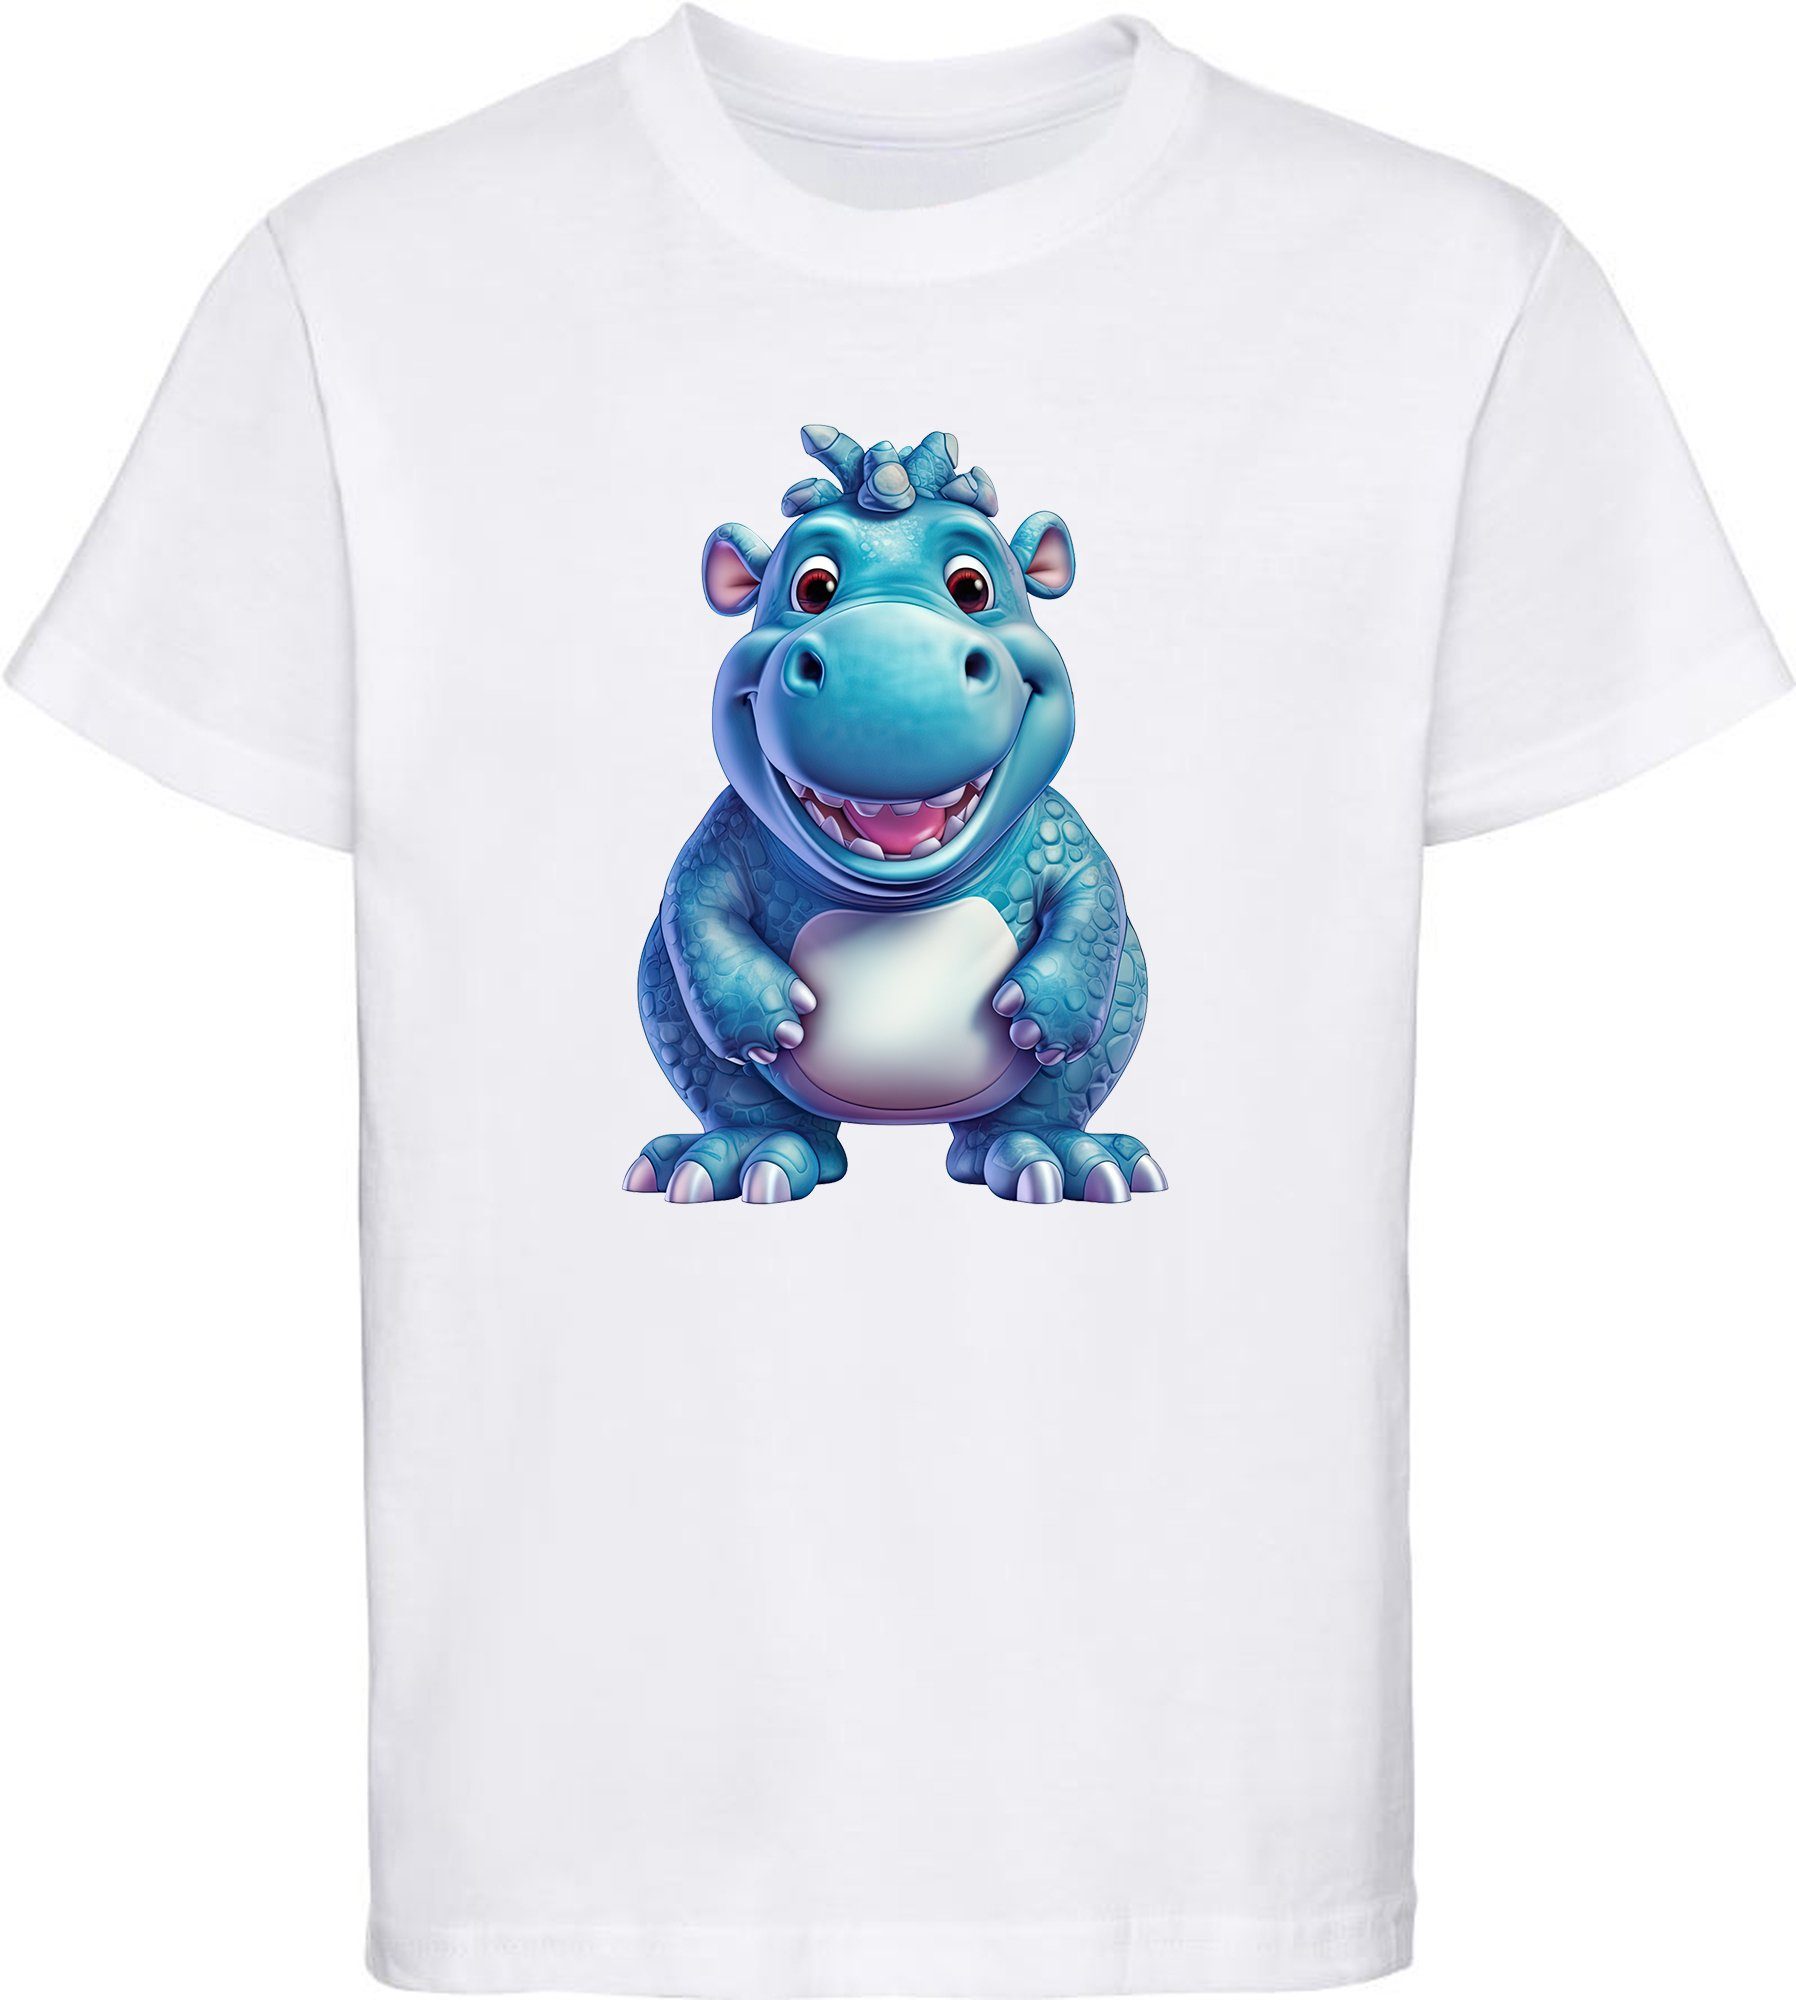 MyDesign24 T-Shirt Kinder - Baumwollshirt Nilpferd Baby Wildtier Hippo weiss i274 mit Aufdruck, Shirt bedruckt Print